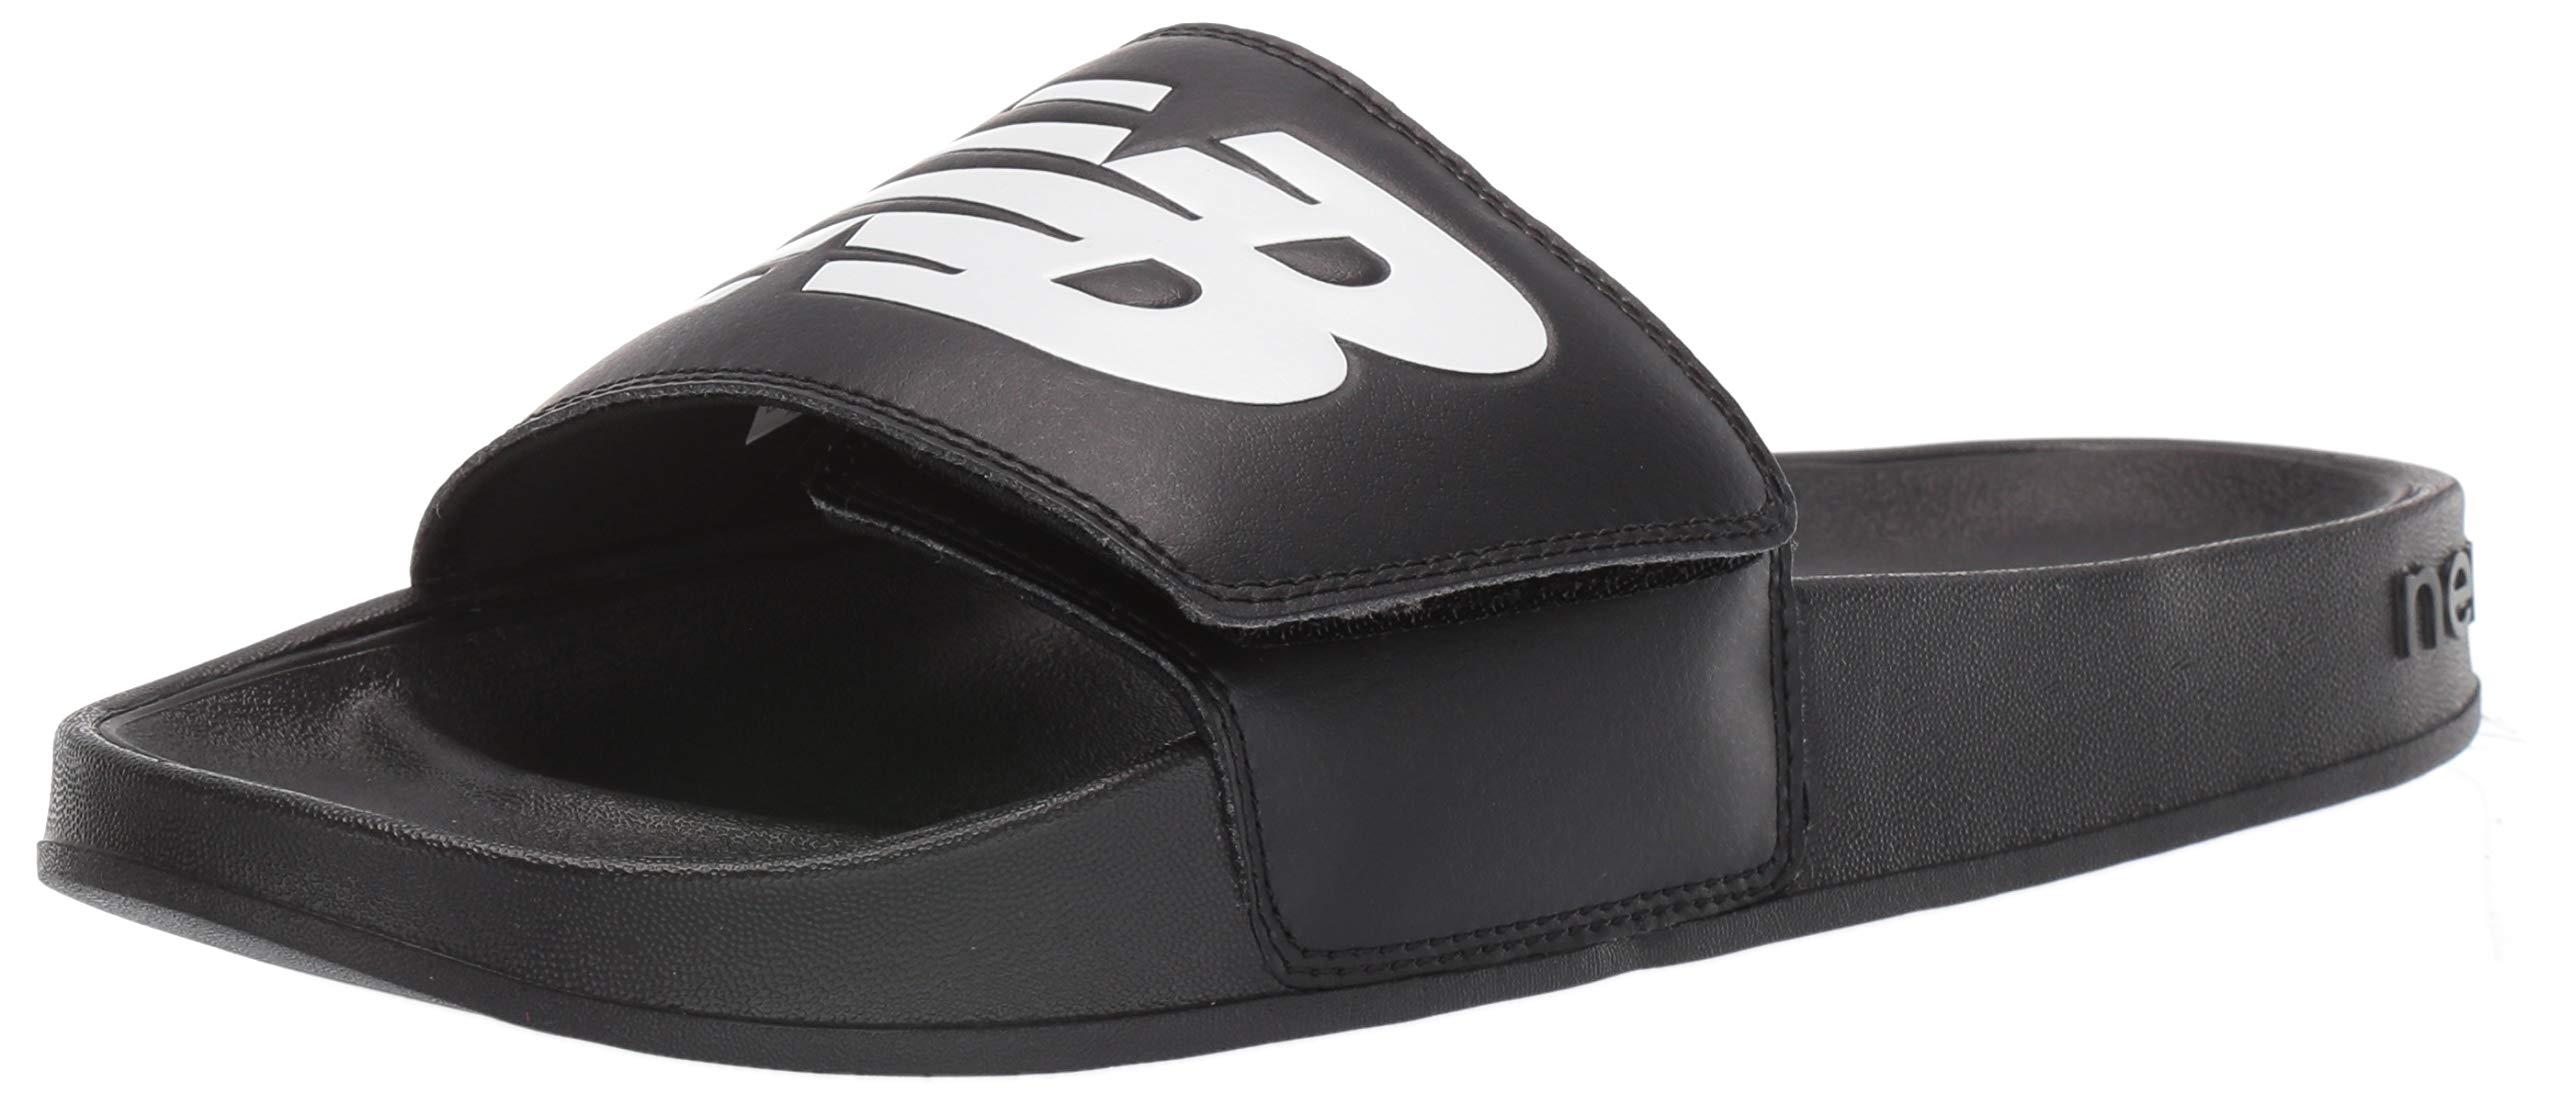 New Balance Rubber 200 V1 Slide Sandal in Black/White (Black) for Men ...